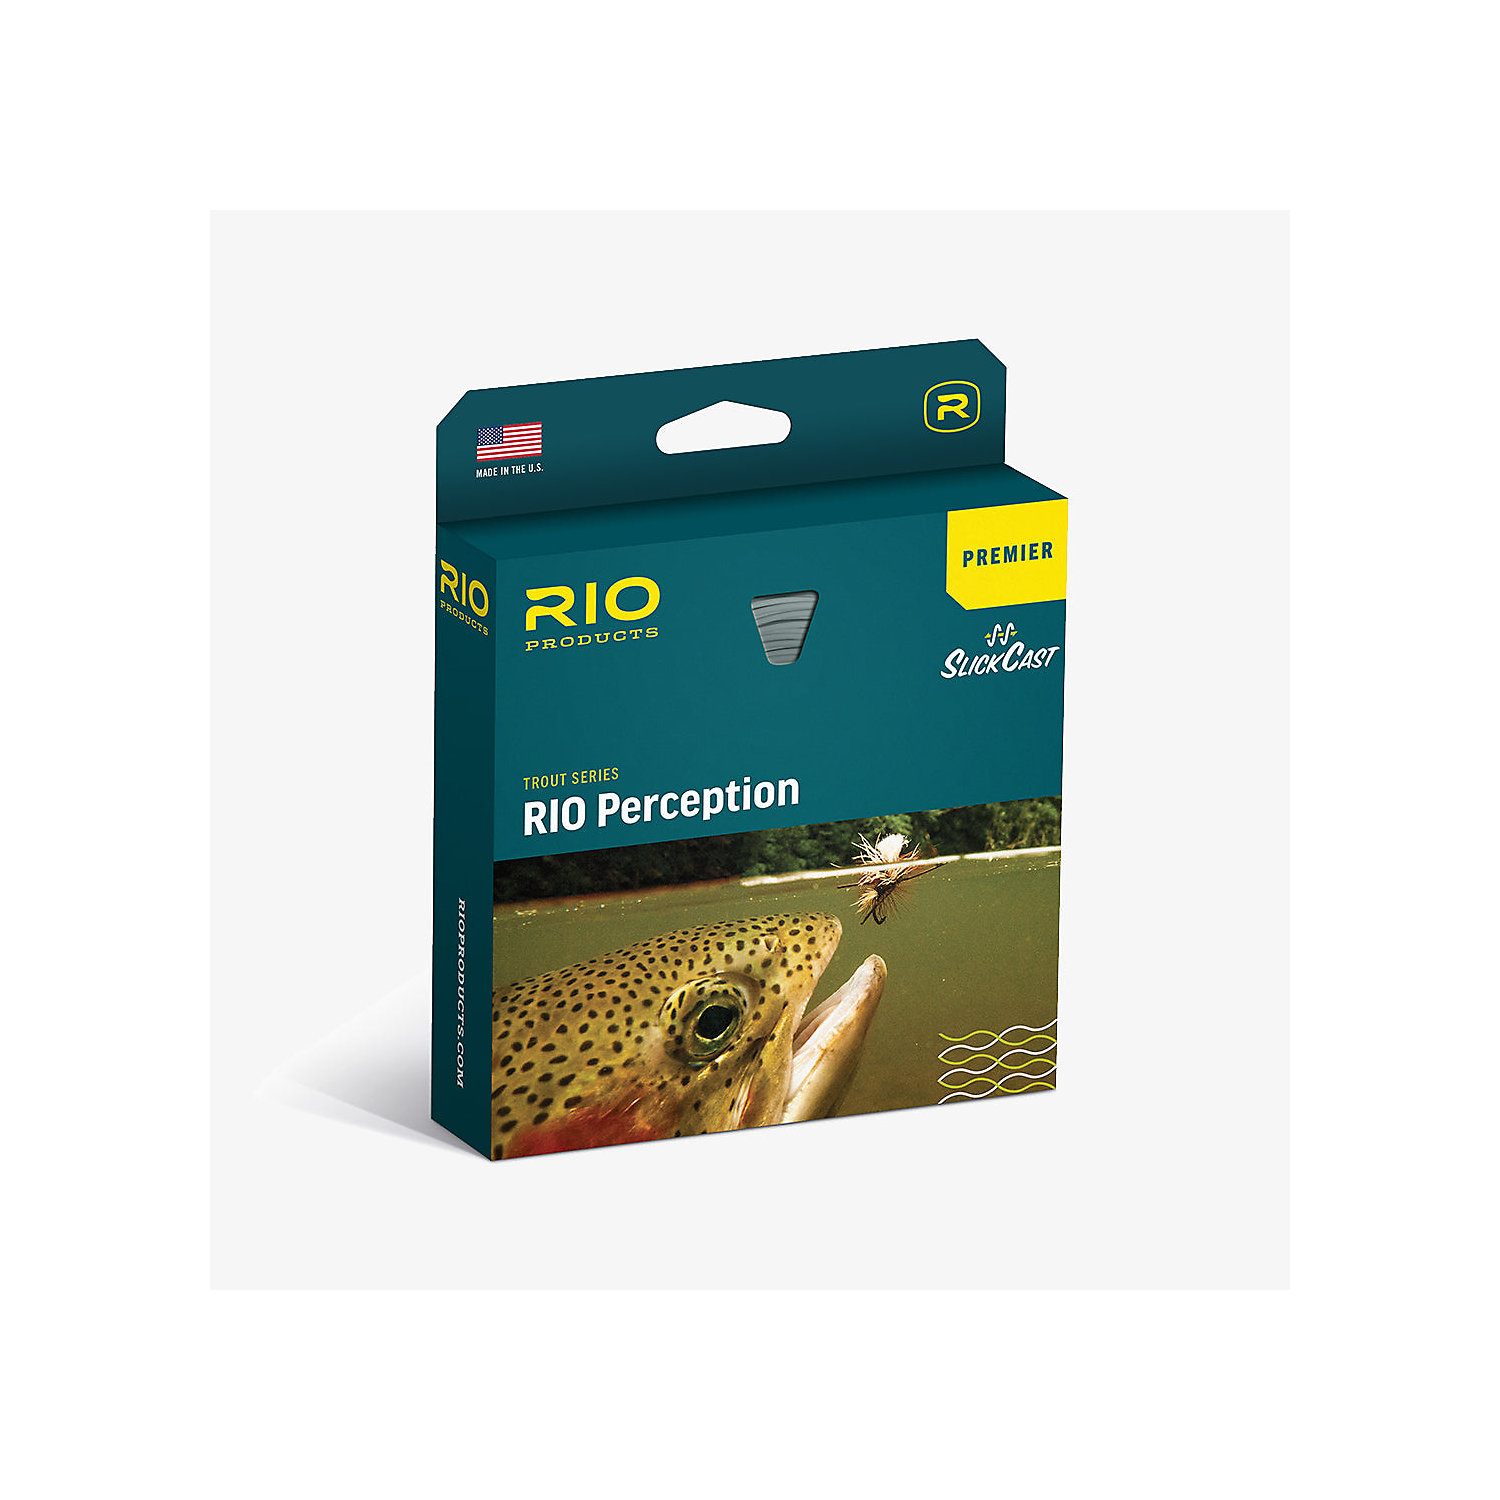 RIO Premier RIO Perception Fly Line